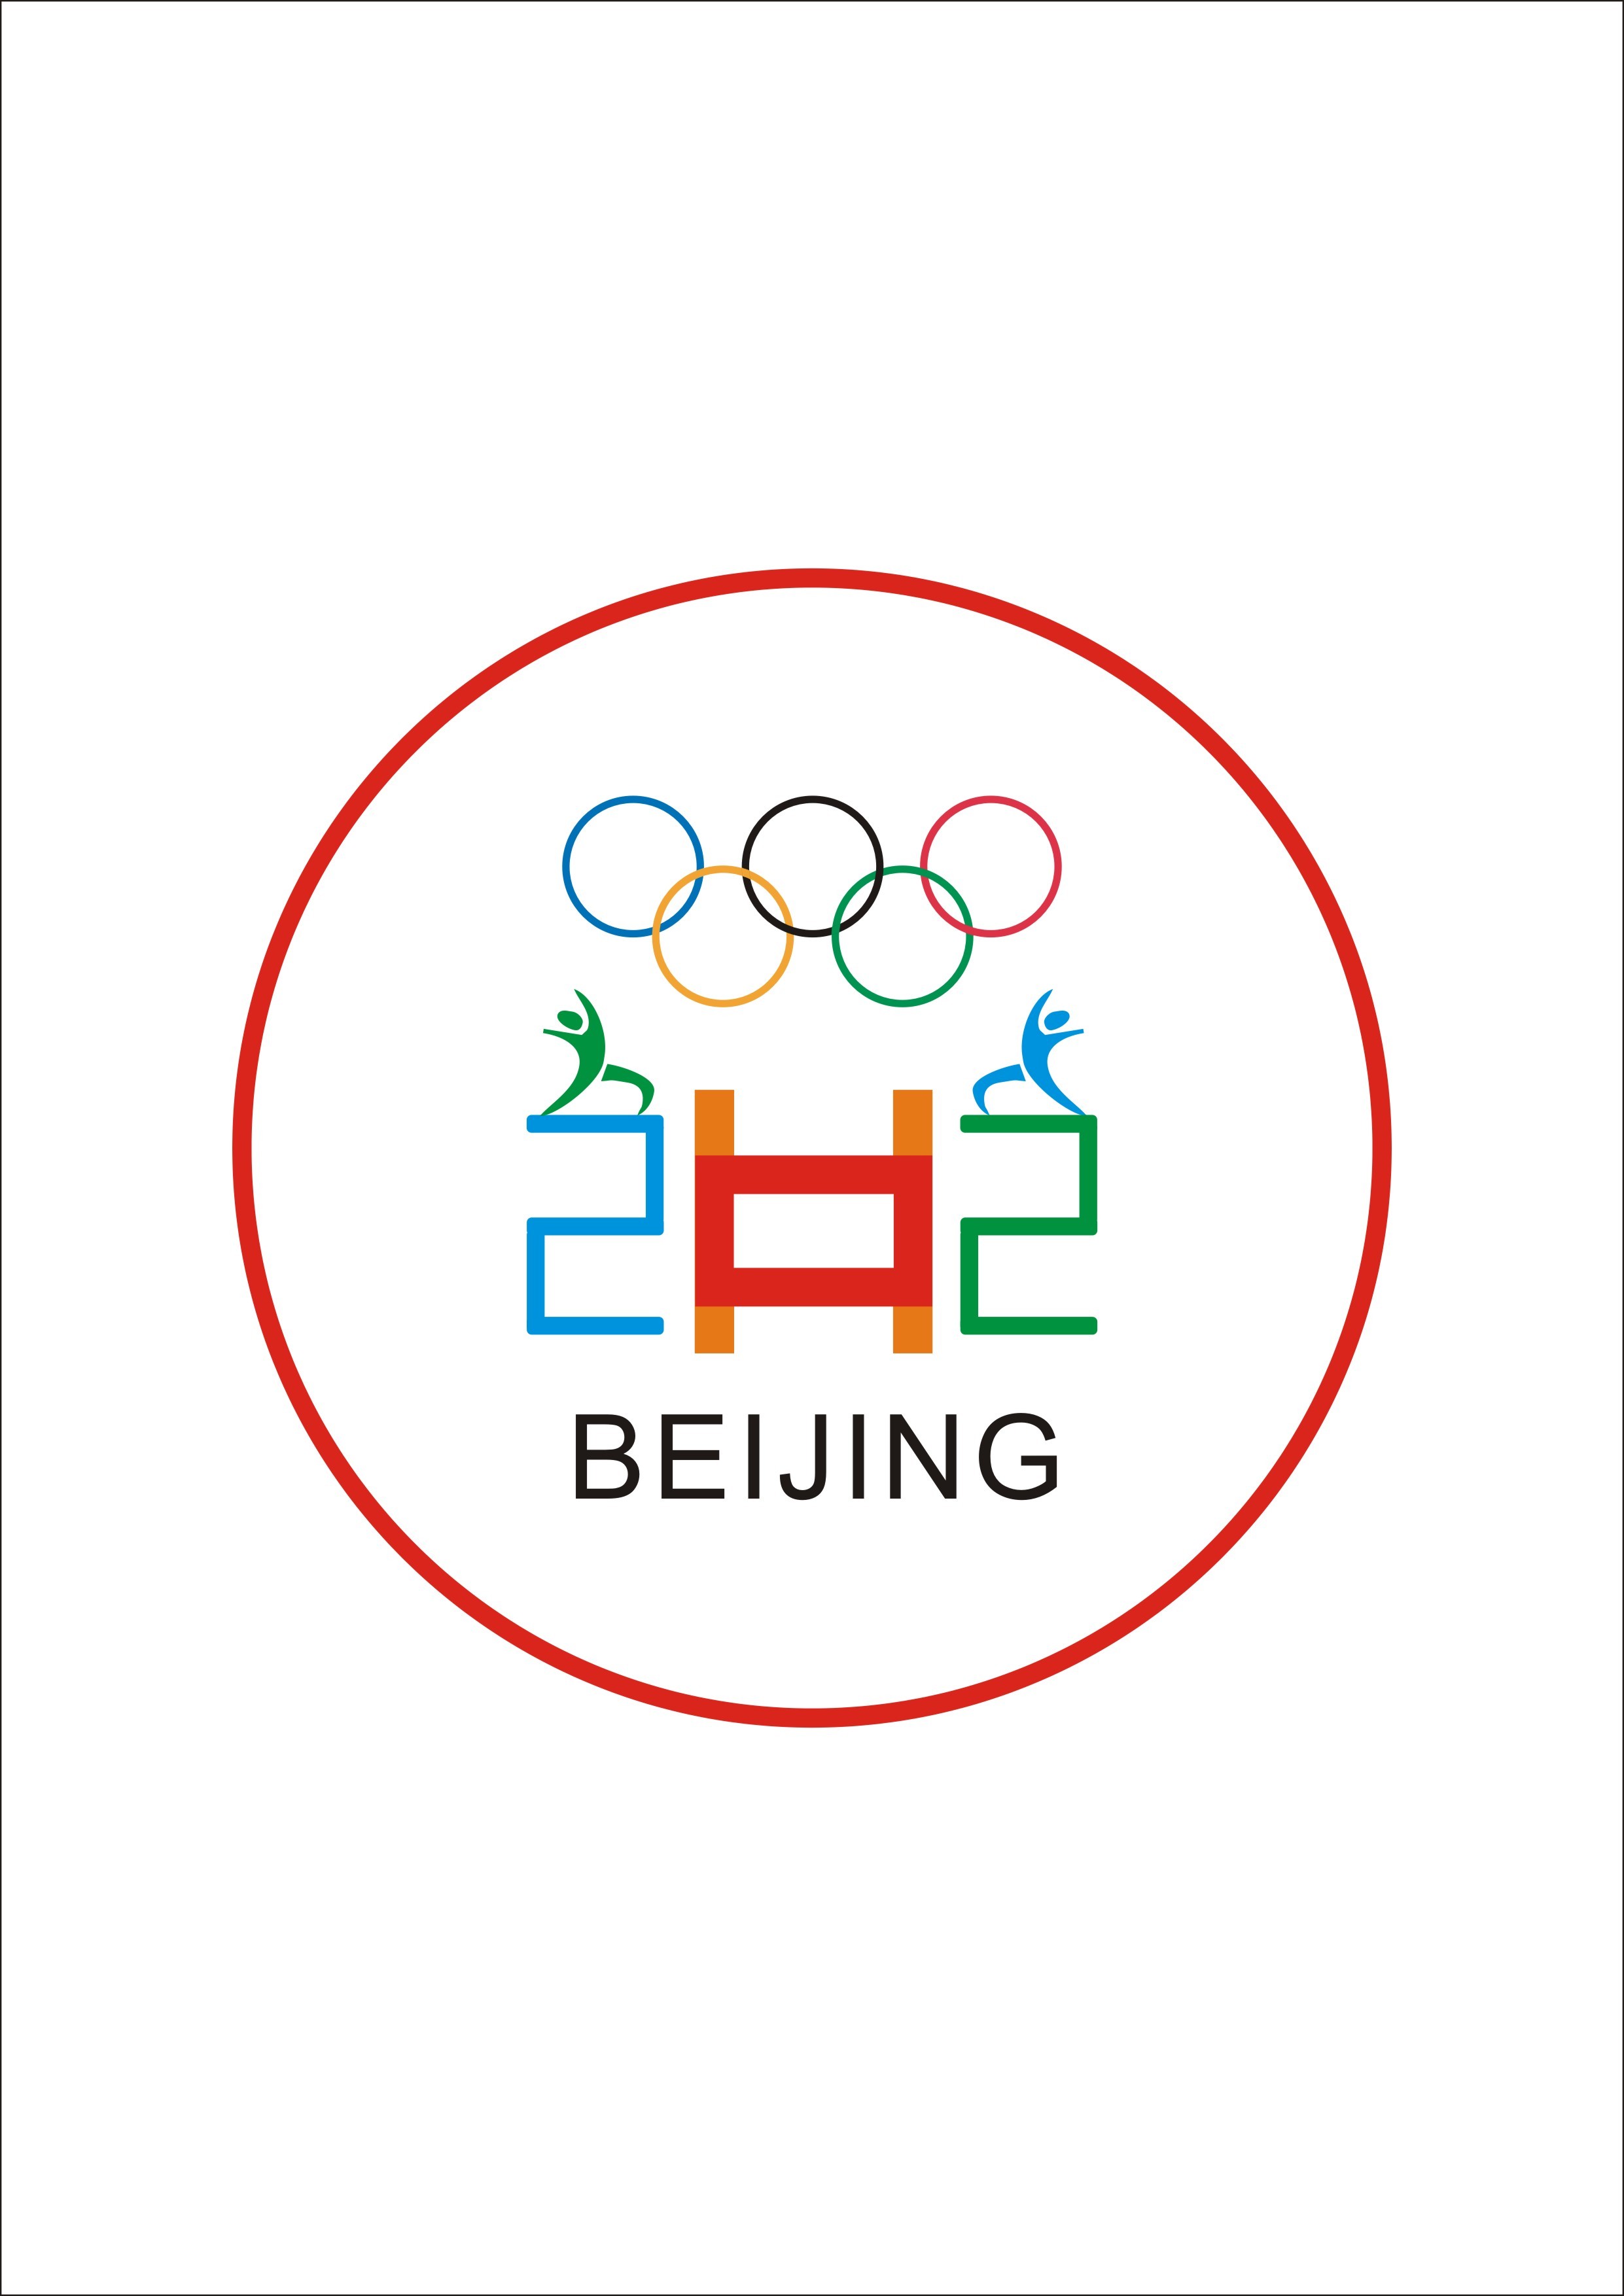 北京2022冬奥标志图片